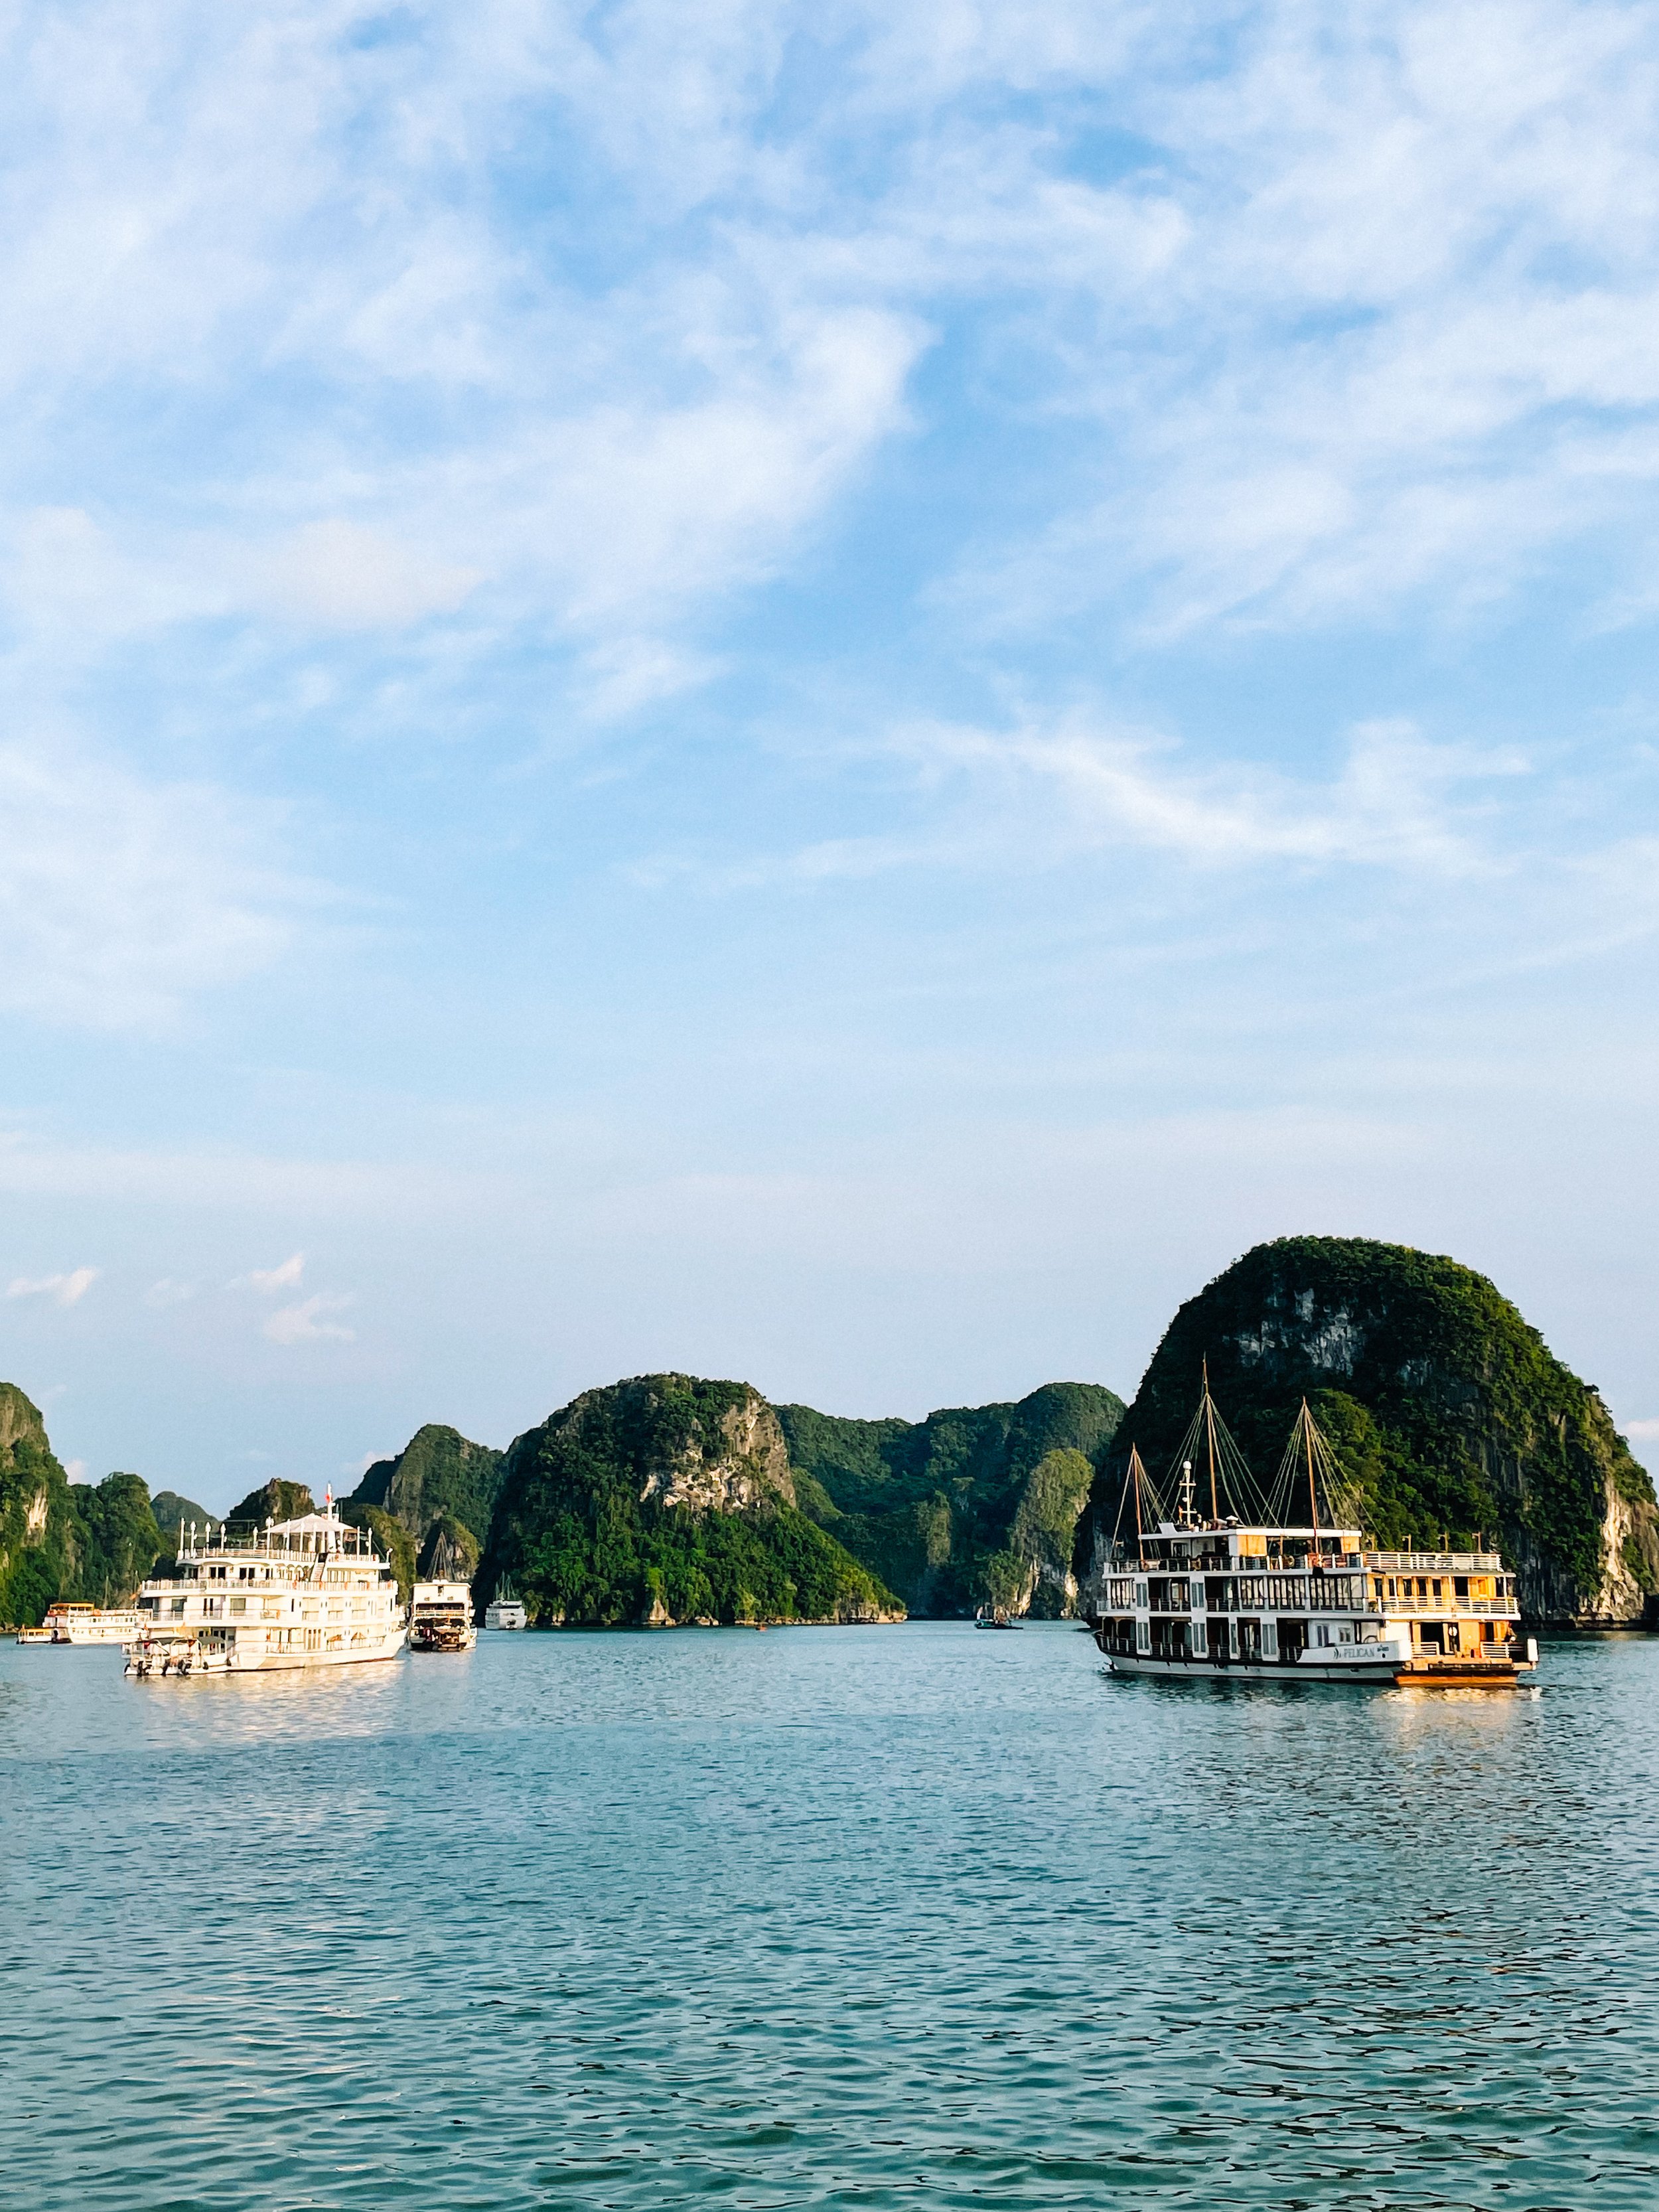 3 week Vietnam itinerary with Ha Giang Loop